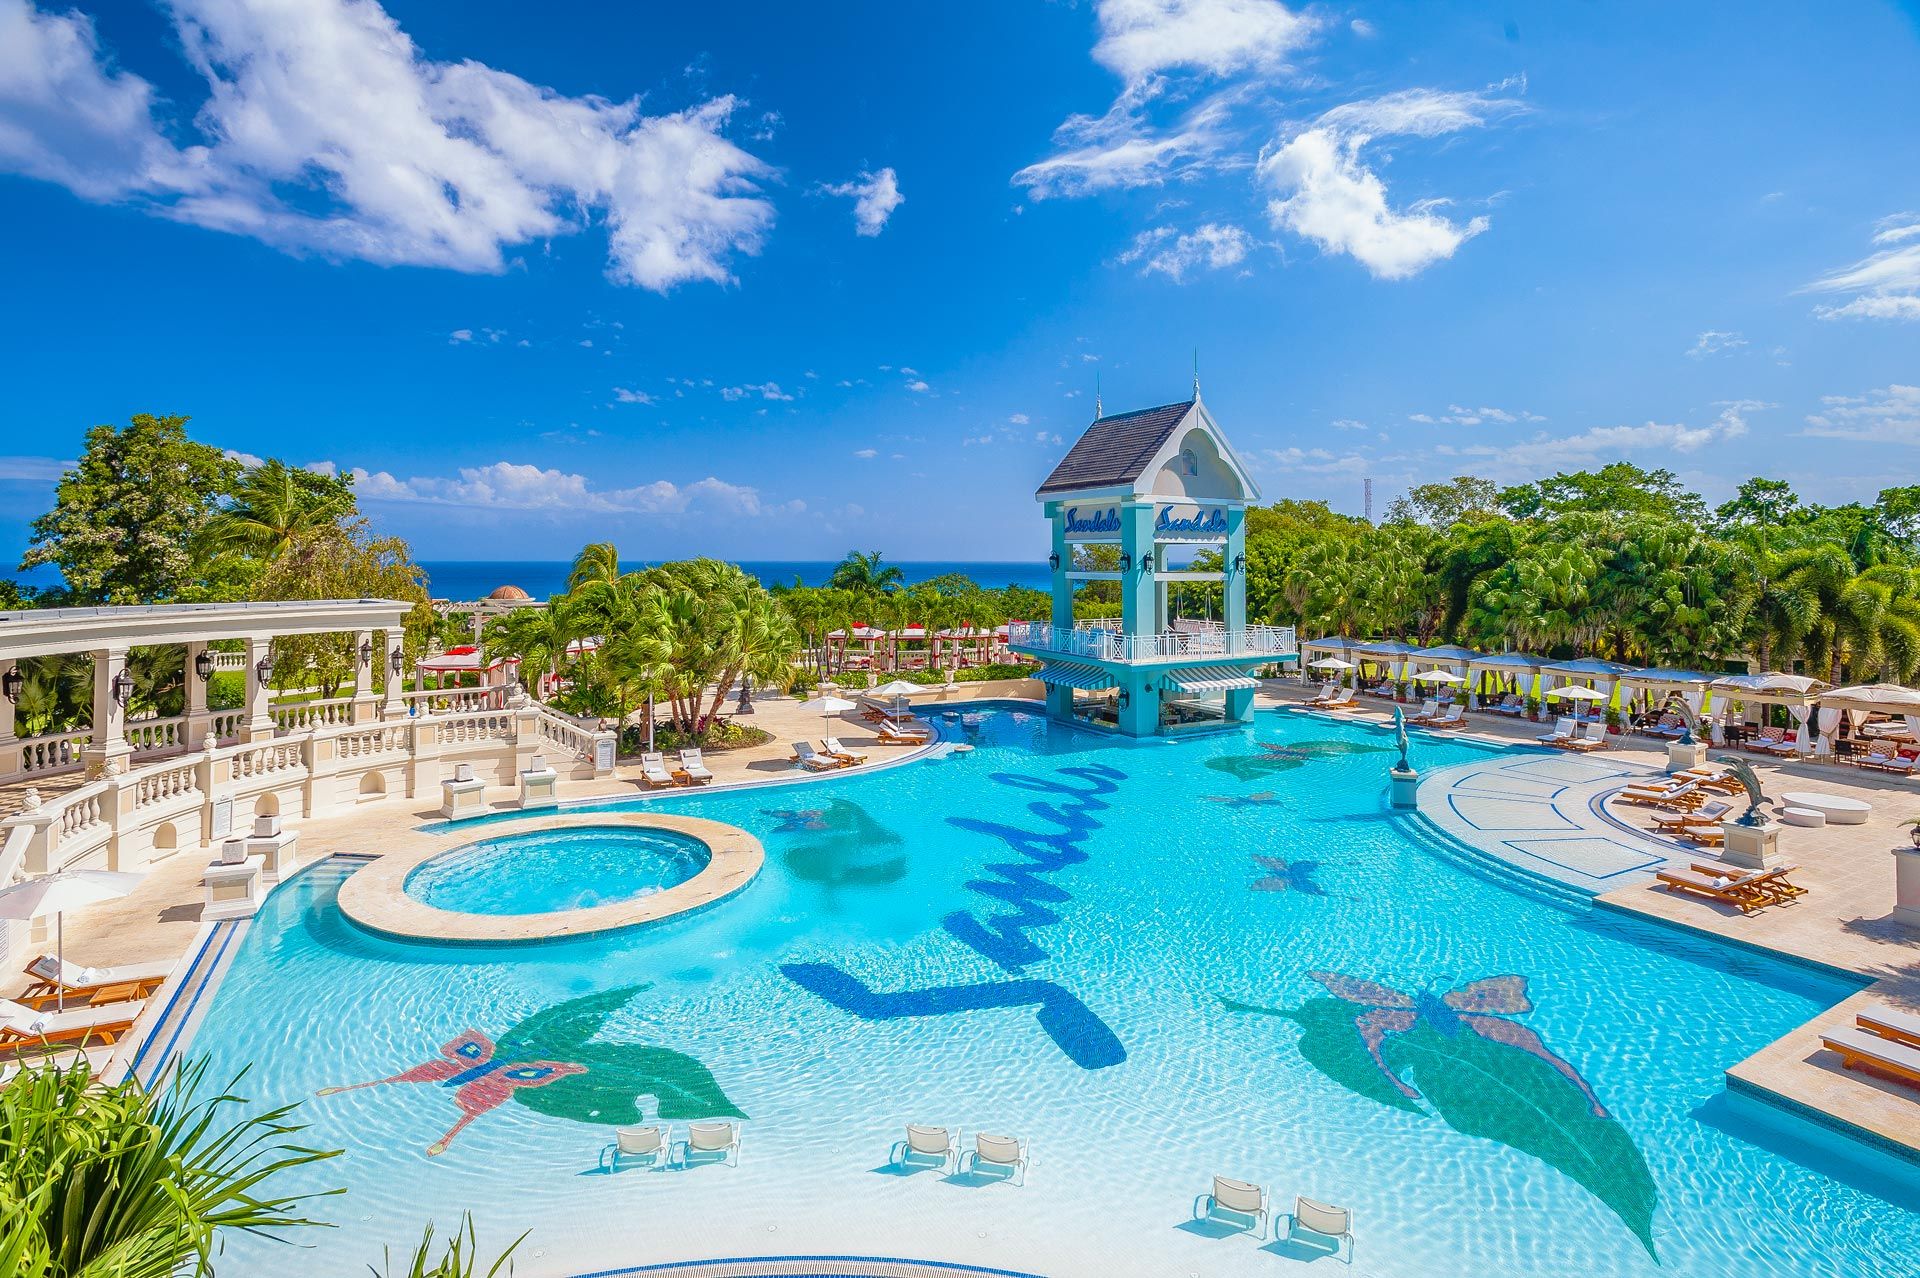 Sandals Ochi resort and pools